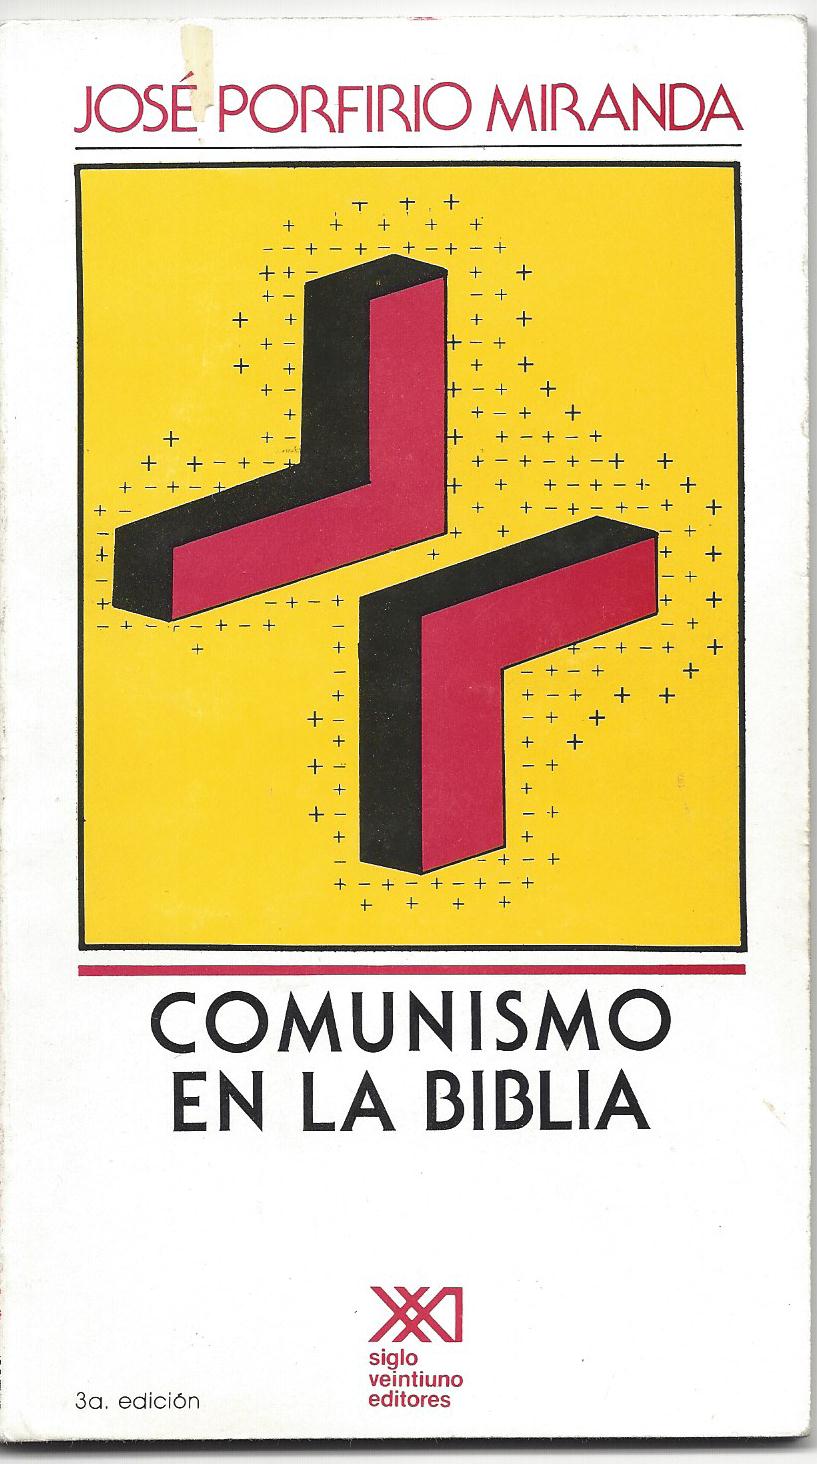 Comunismo en la Biblia